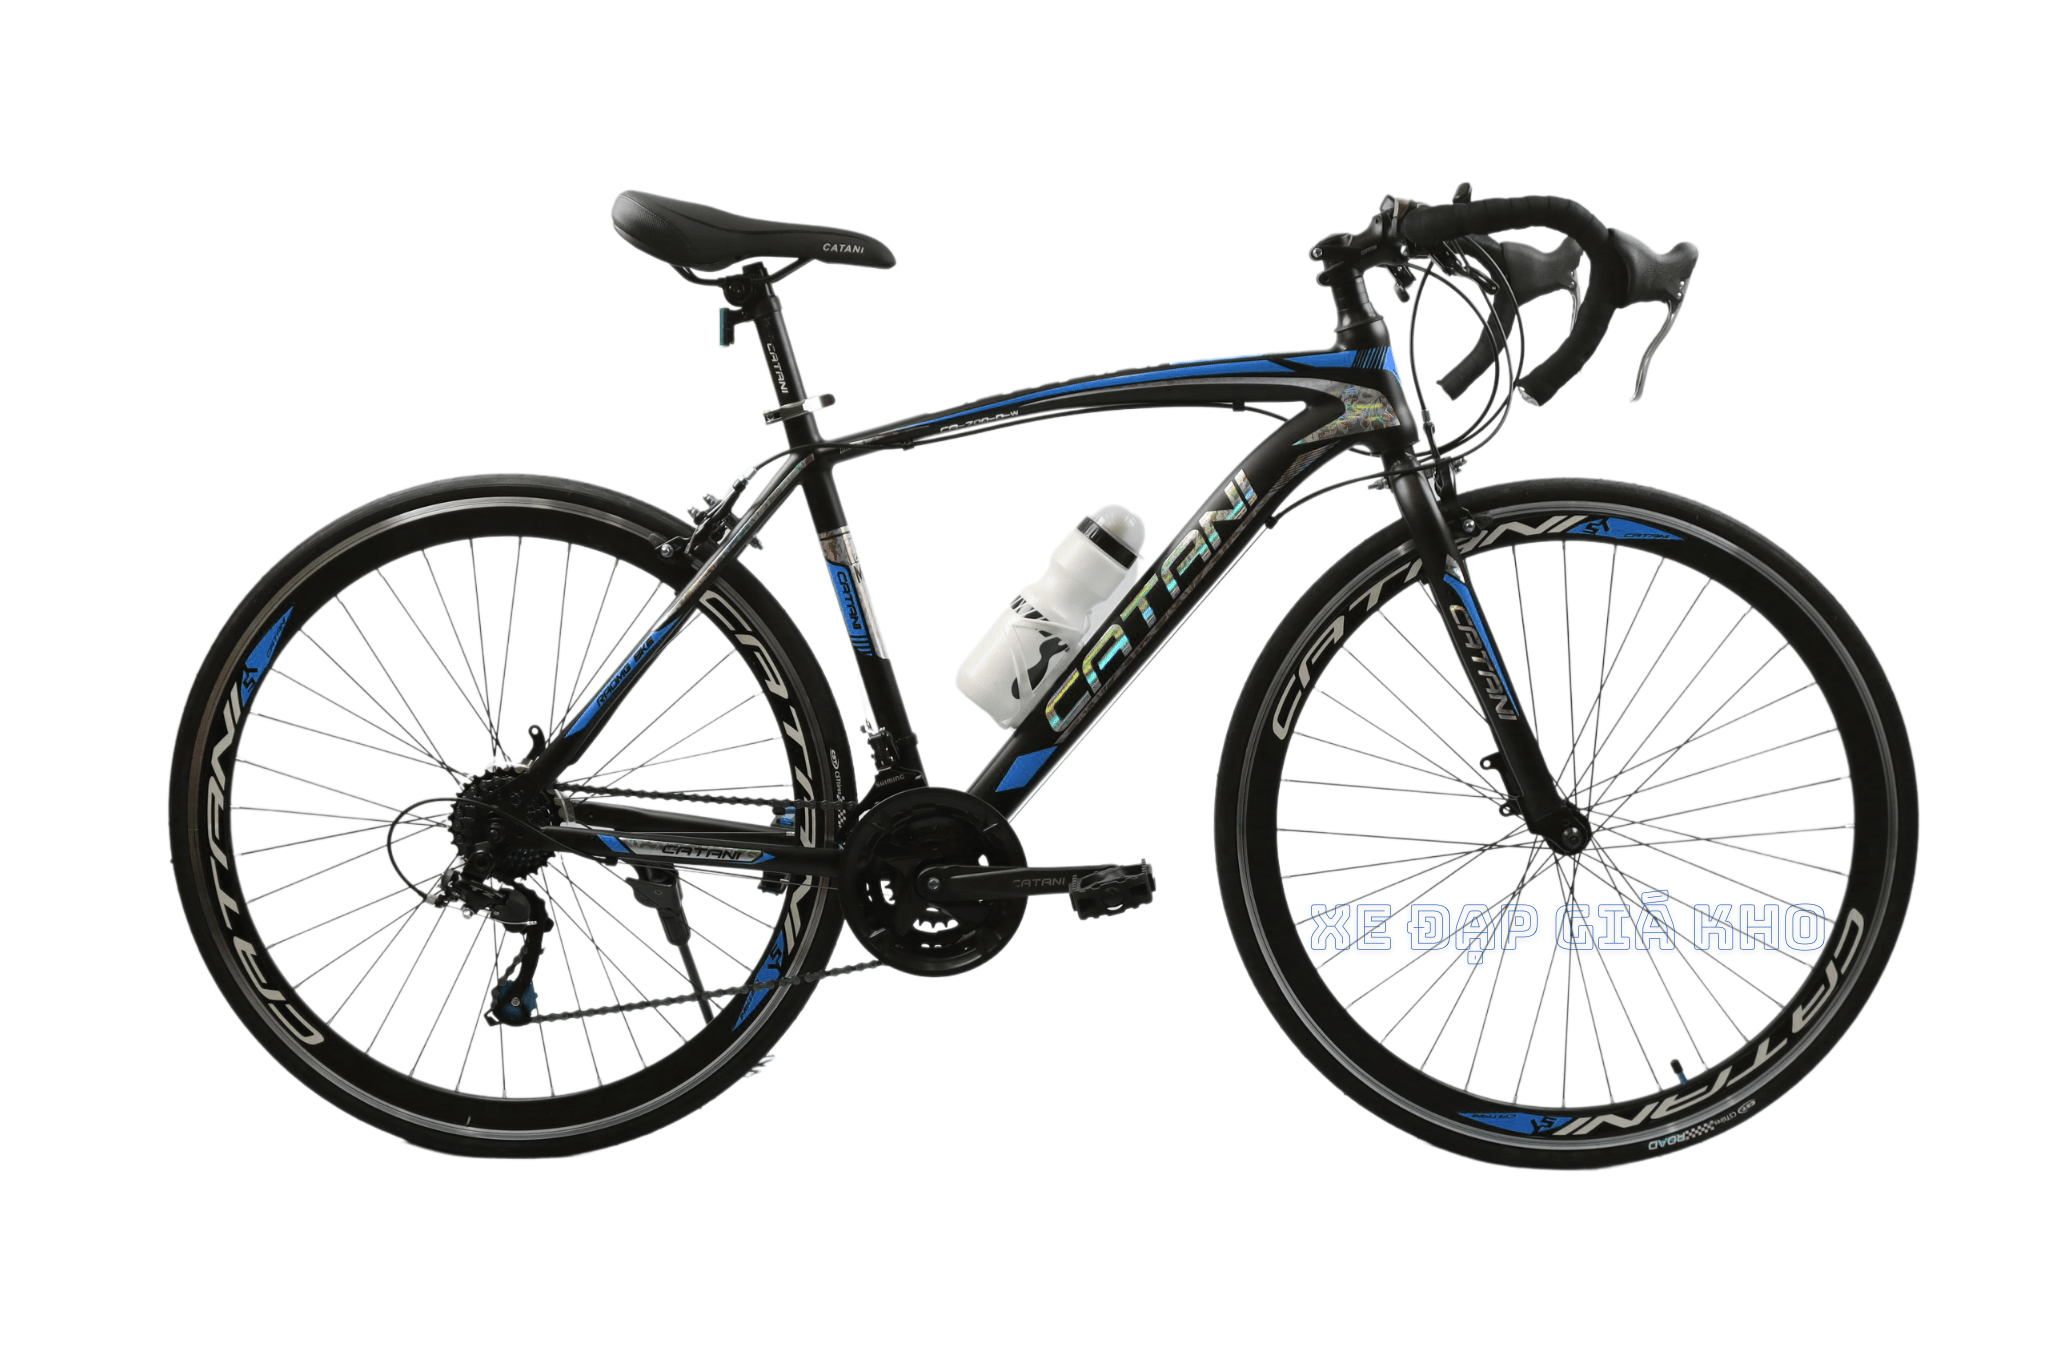 Xe đạp đua Catani là dòng xe đạp đua cao cấp, được nhập khẩu trực tiếp từ Italy. Những hình ảnh chi tiết về xe đạp đua Catani sẽ giúp bạn tìm hiểu thông tin và đánh giá chi tiết về thiết kế, tính năng và chất lượng của xe.